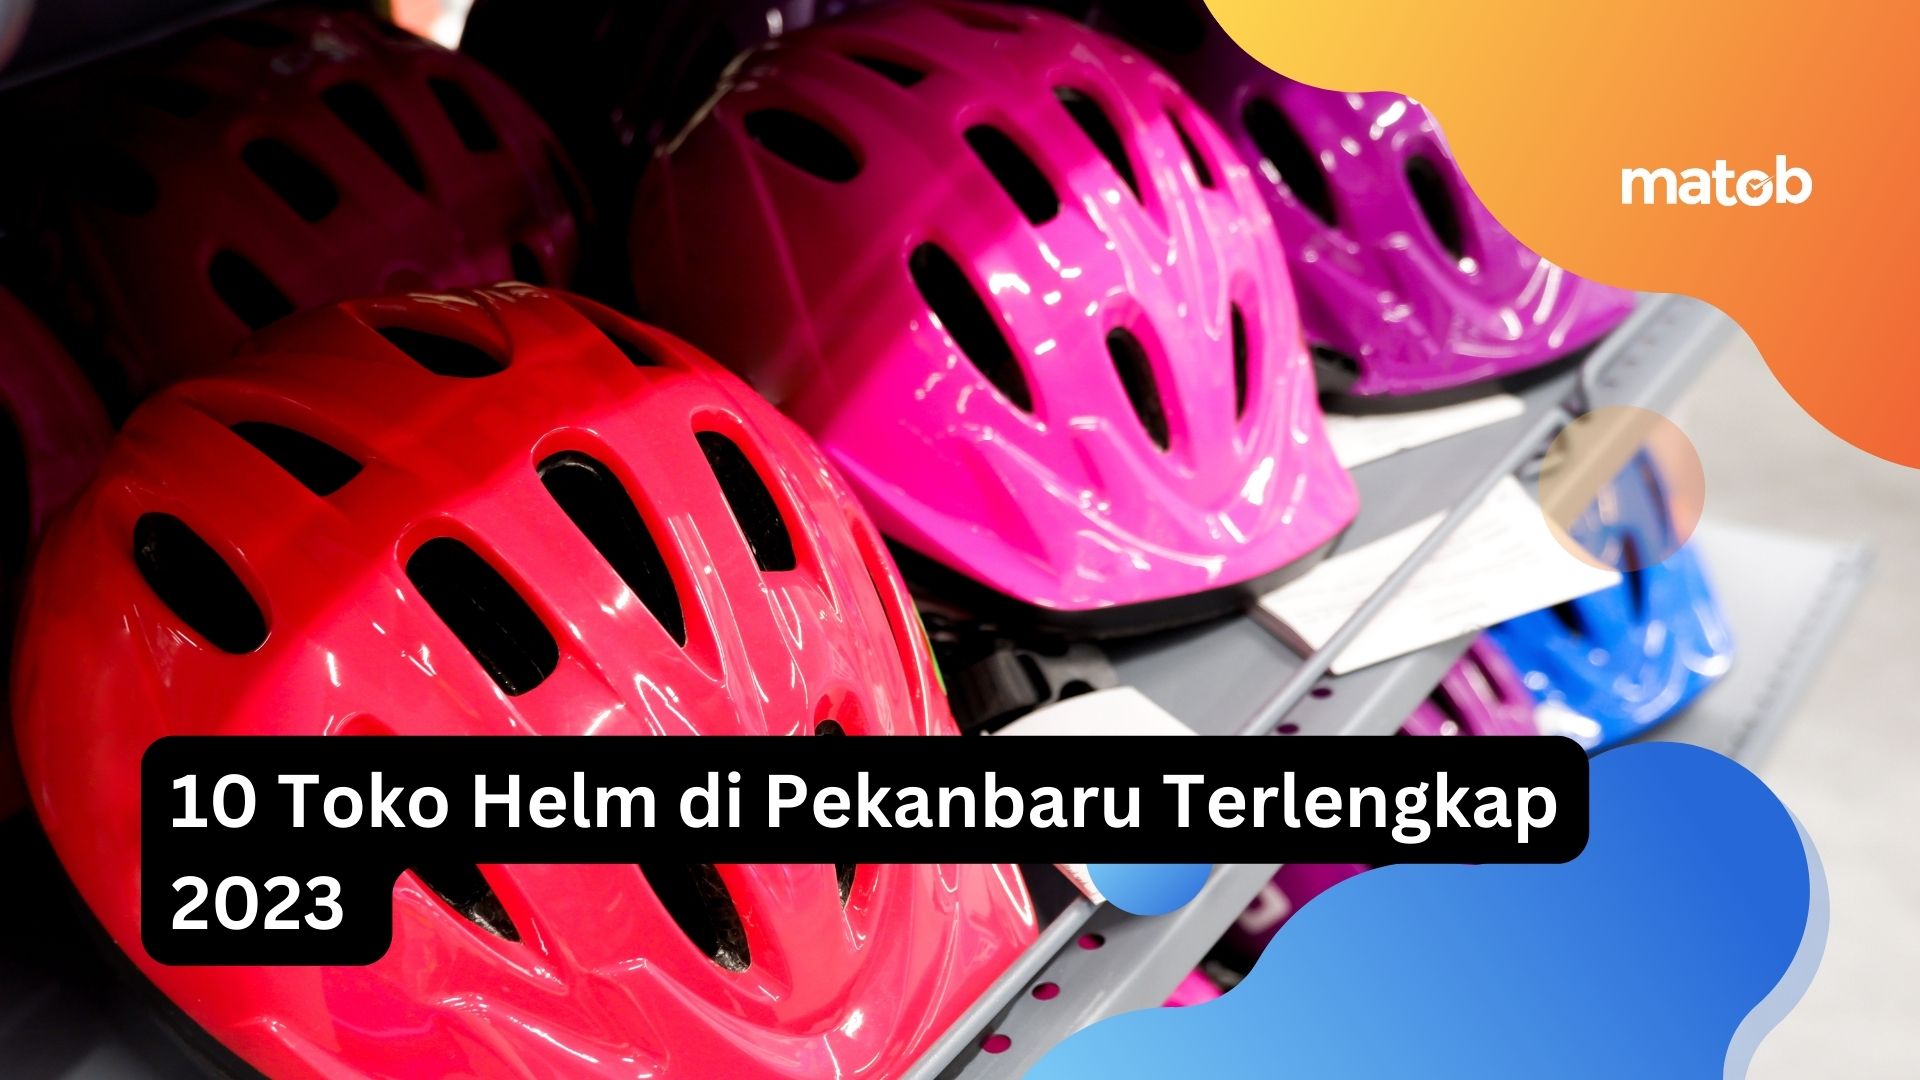 9 Toko Helm di Pekanbaru Terlengkap 2023